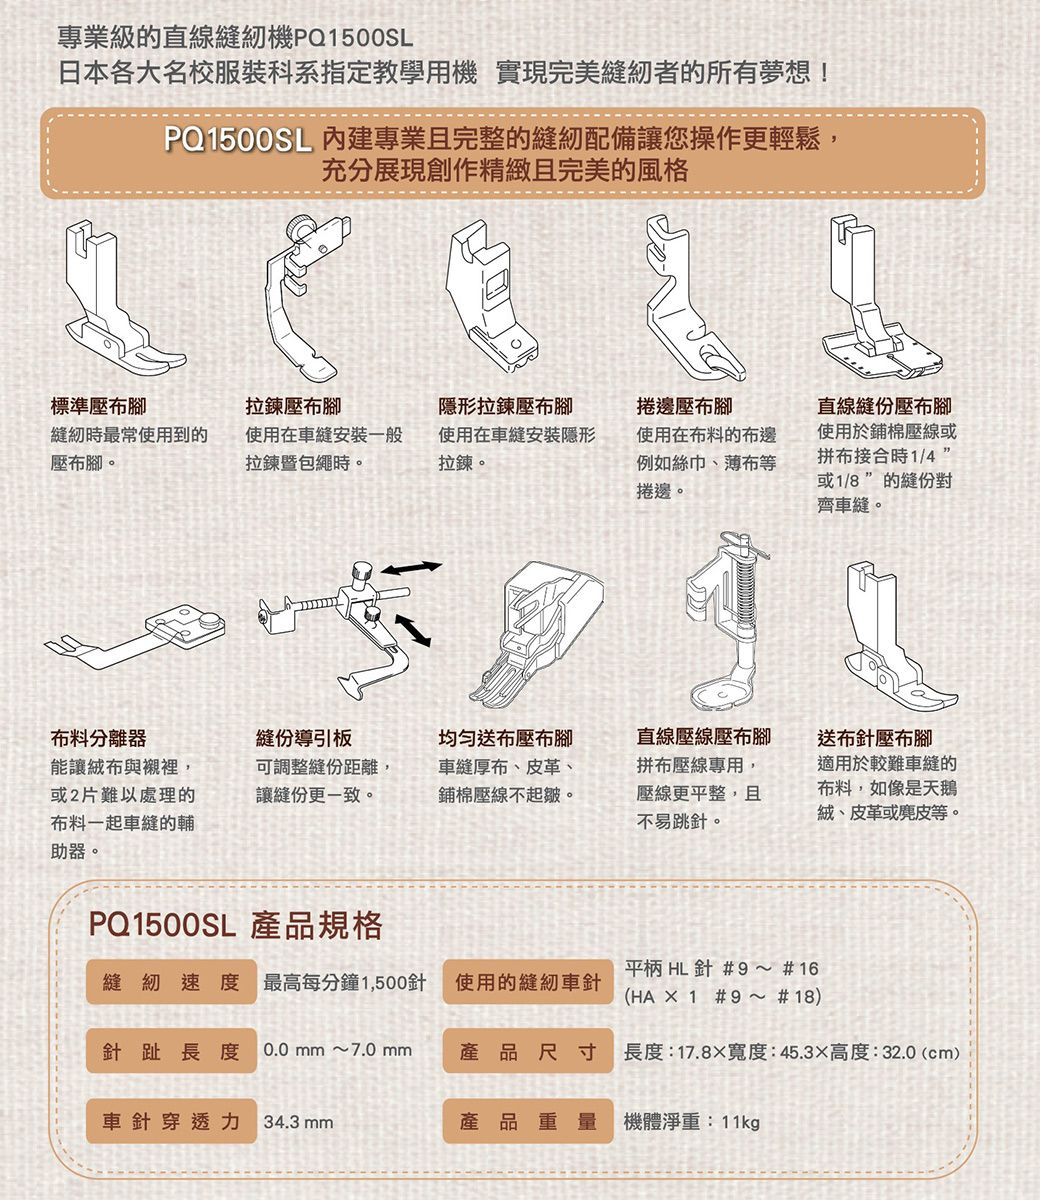 專業級的直線縫紉機PQ150SL日本各大名校服裝科系指定教學用機 實現完美縫紉者的所有夢想!PQ1500SL 內建專業且完整的縫紉配備讓您操作更輕鬆,充分展現創作精緻且完美的風格0標準壓布腳拉鍊壓布腳縫紉時最常使用到的壓布腳。使用在安裝一般拉鍊暨包繩時。隱形拉鍊壓布腳使用在車縫安裝隱形拉鍊。捲邊壓布腳使用在布料的布邊例如絲巾、薄布等捲邊。直線縫份壓布腳使用於鋪棉壓線或拼布接合時1/4或1/8的縫份對齊車縫。布料分離器能讓布與襯裡,或2片難以處理的布料一起車縫的輔助器。縫份導引板可調整縫份距離,讓縫份更一致。送布壓布腳車縫厚布、皮革、鋪棉壓線不起皺。直線壓線壓布腳拼布壓線專用,壓線更平整,且不易跳針。送布針壓布腳適用於較難車縫的布料,如像是天鵝絨、皮革或麂皮等。PQ1500SL 產品規格縫紉速度 最高每分鐘1,500針 使用的縫紉車針針趾長度 0.0 7.0mm 產品尺寸平柄 HL針 9~ #16(HA 1 #9~ #18)長度:17.8寬度:45.3×高度:32.0(cm)車針穿透力34.3 mm產品重量機體淨重:11kg